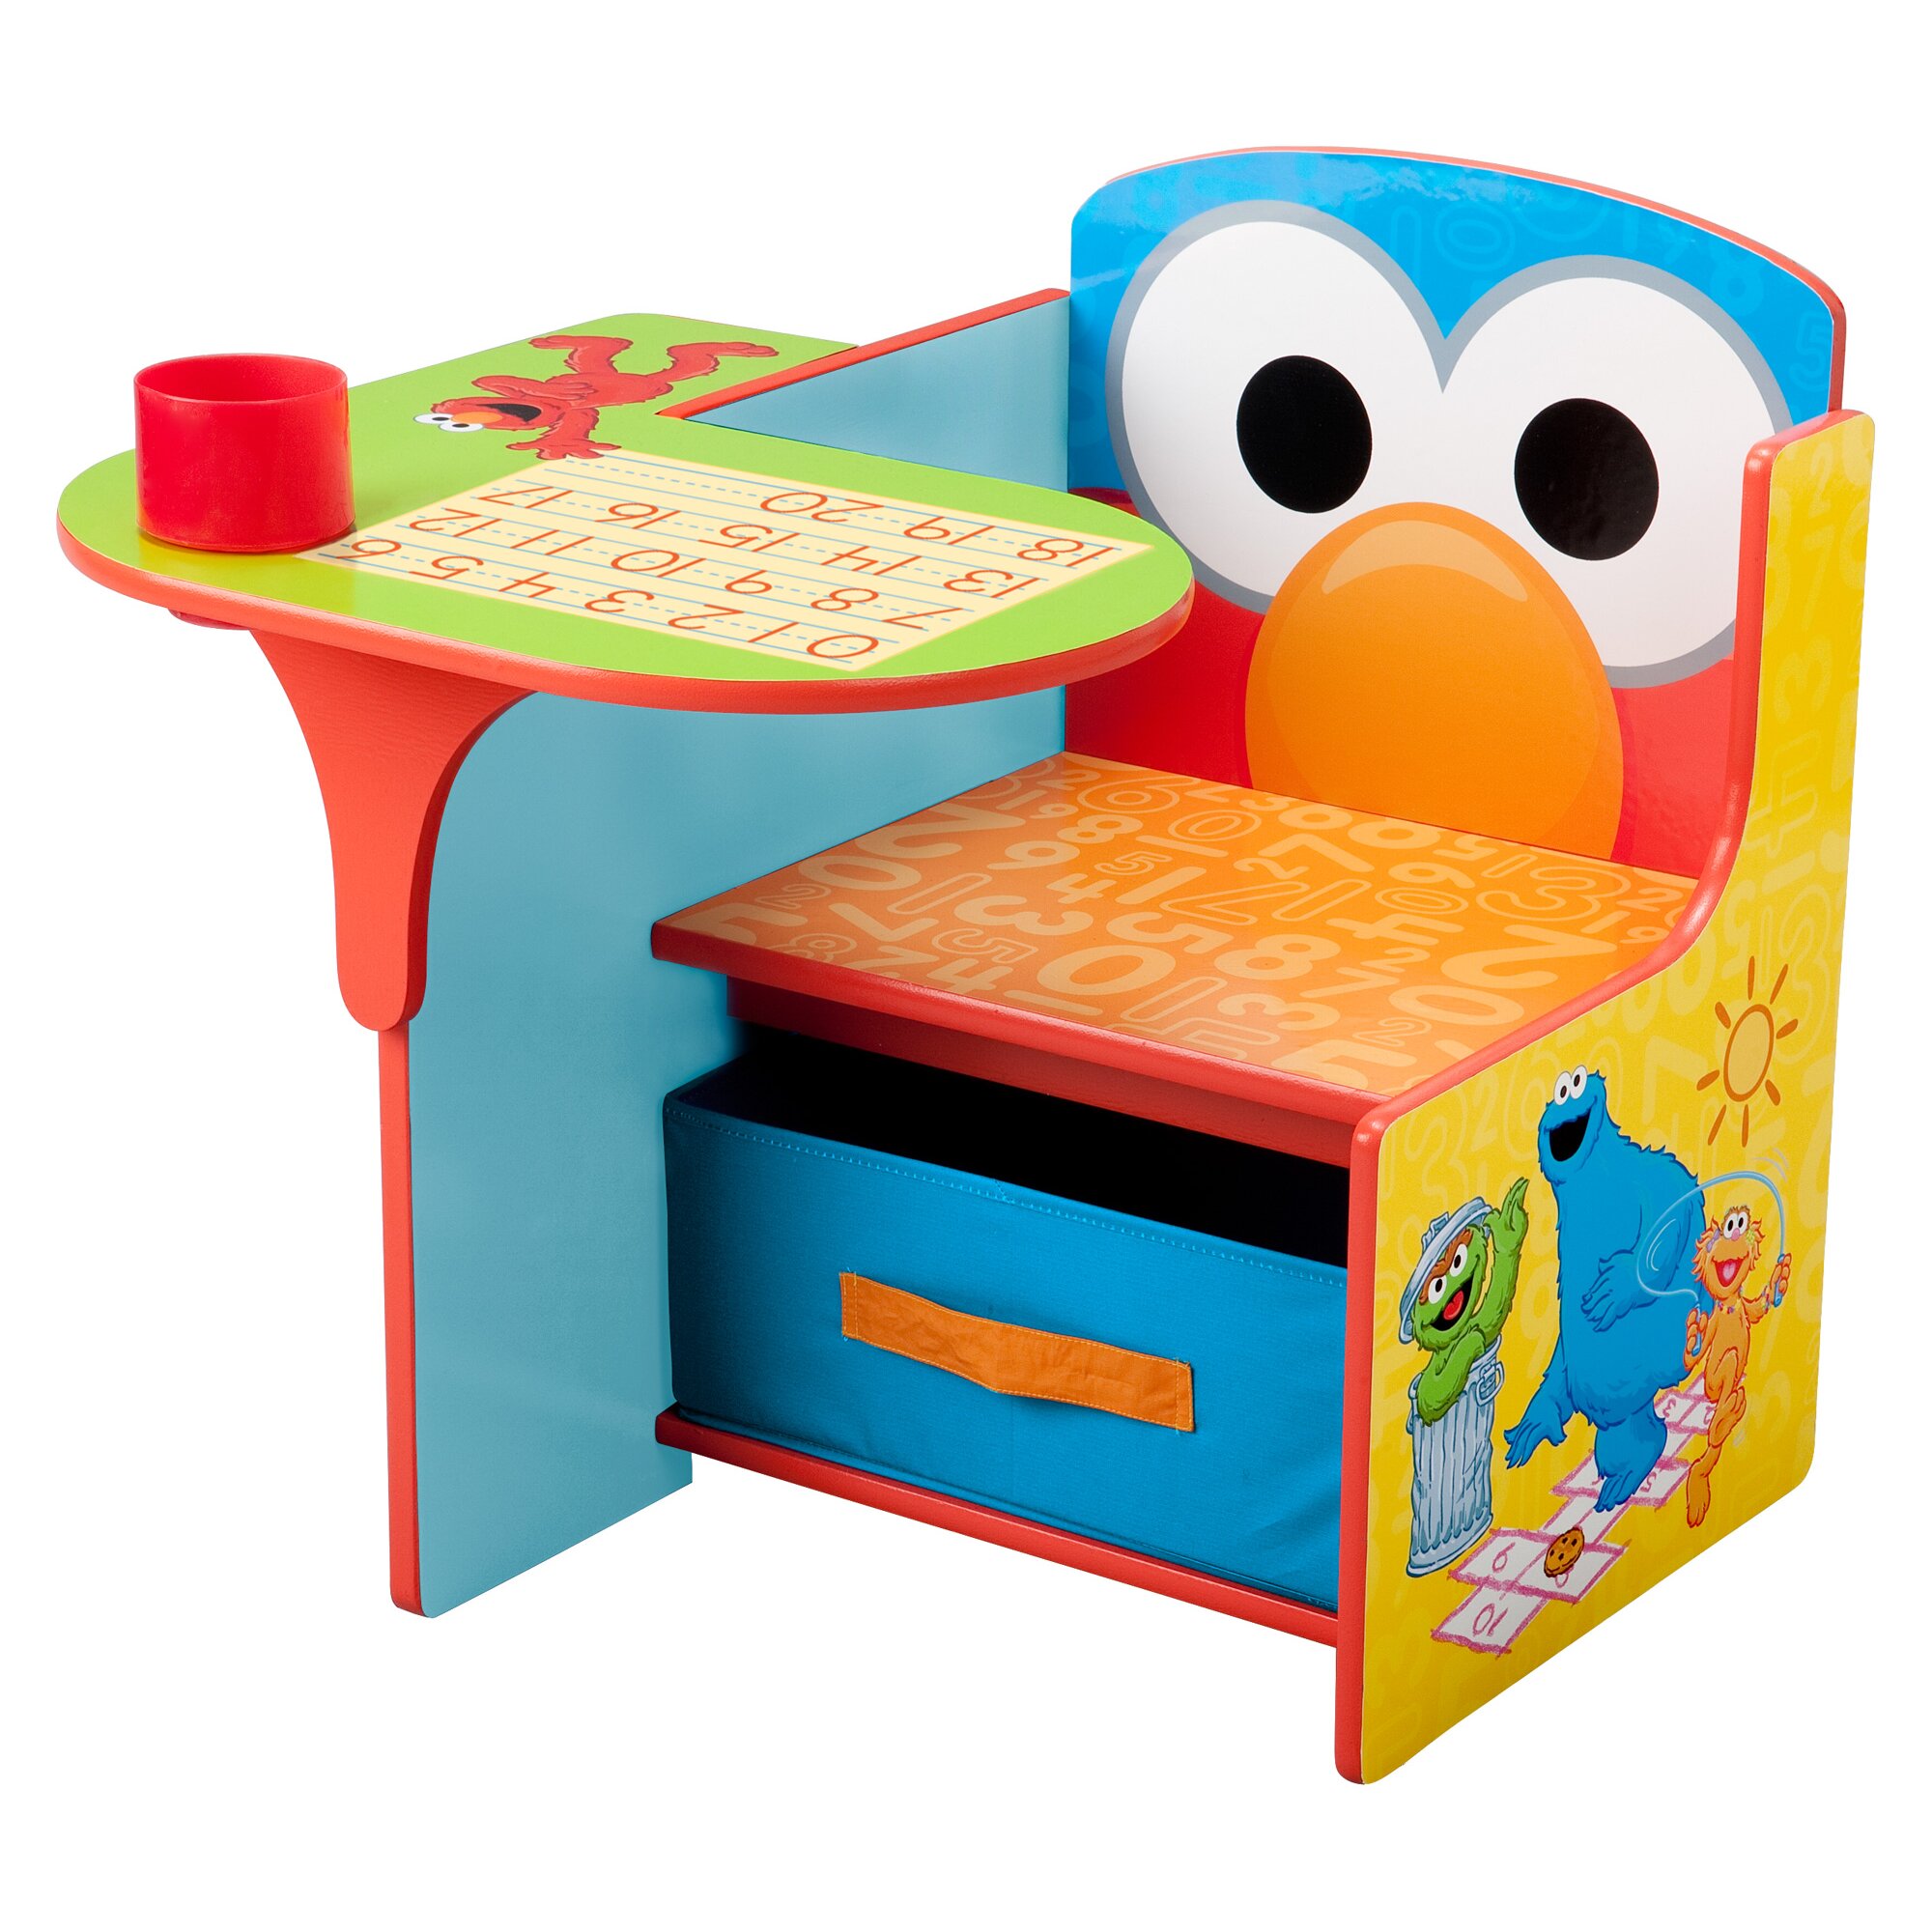 Delta Children Sesame Street Kids Desk Chair With Storage Compartment